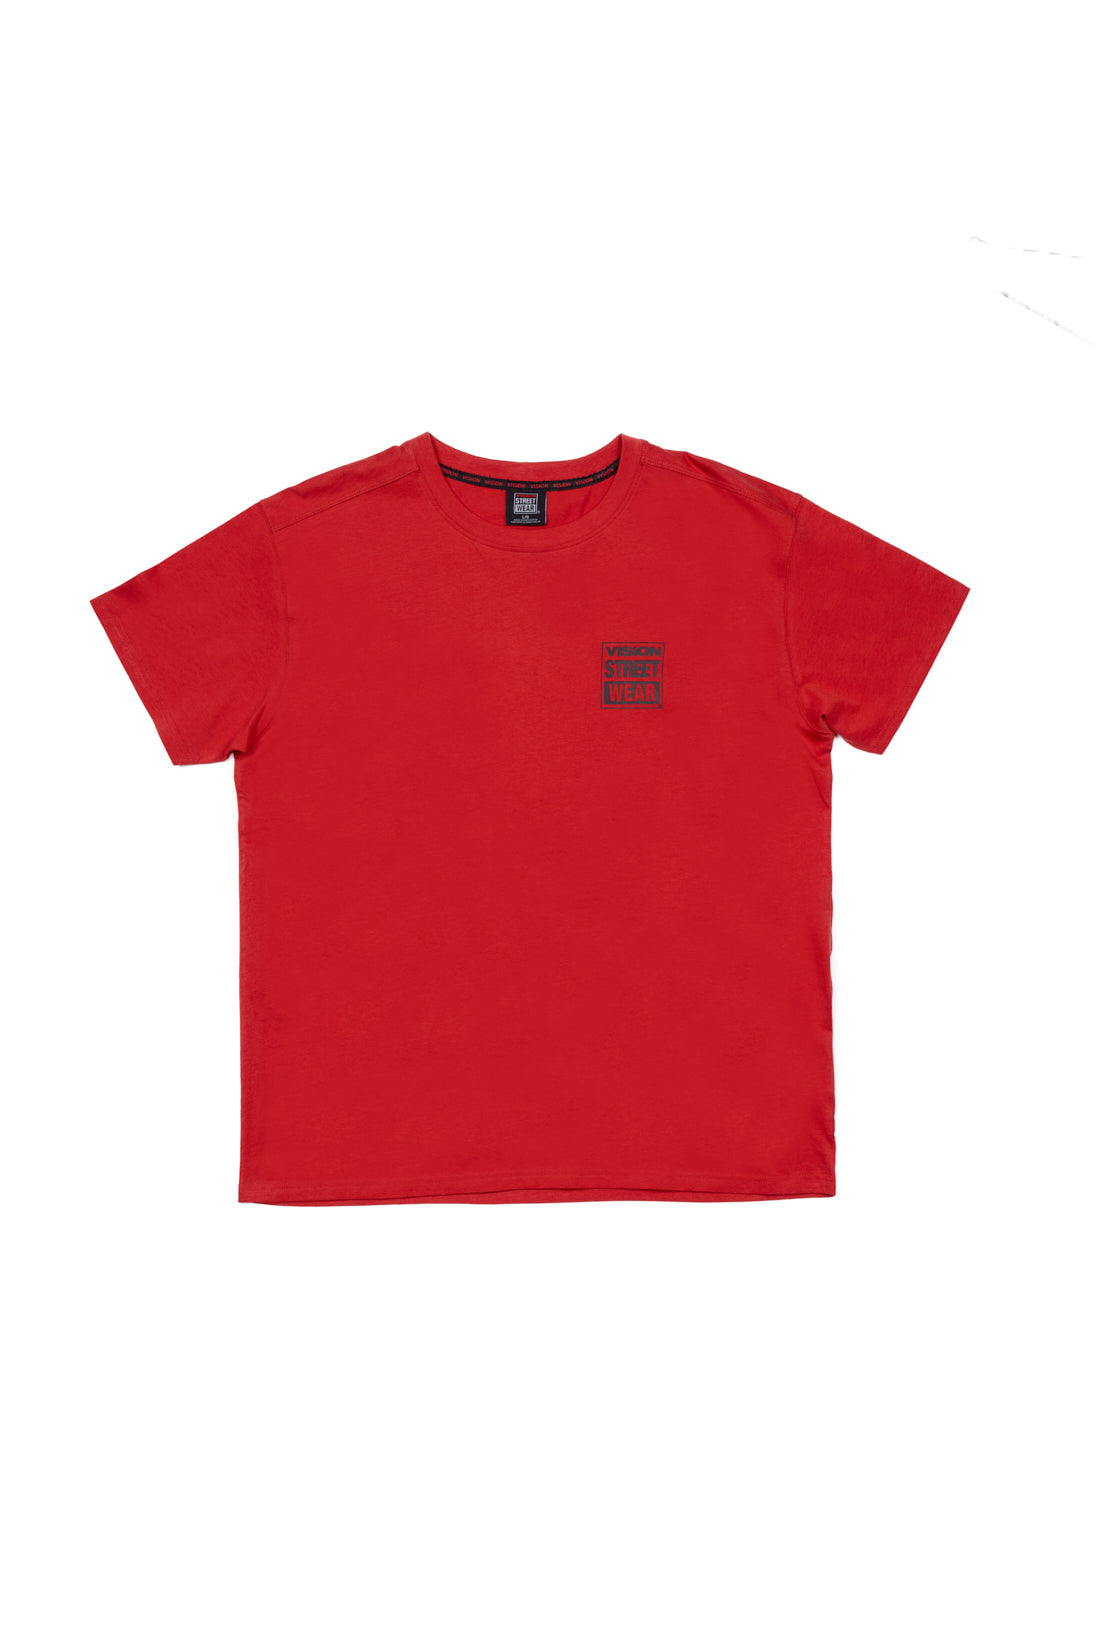 Safety Pin Logo T-Shirt - Red - DENIM SOCIETY™